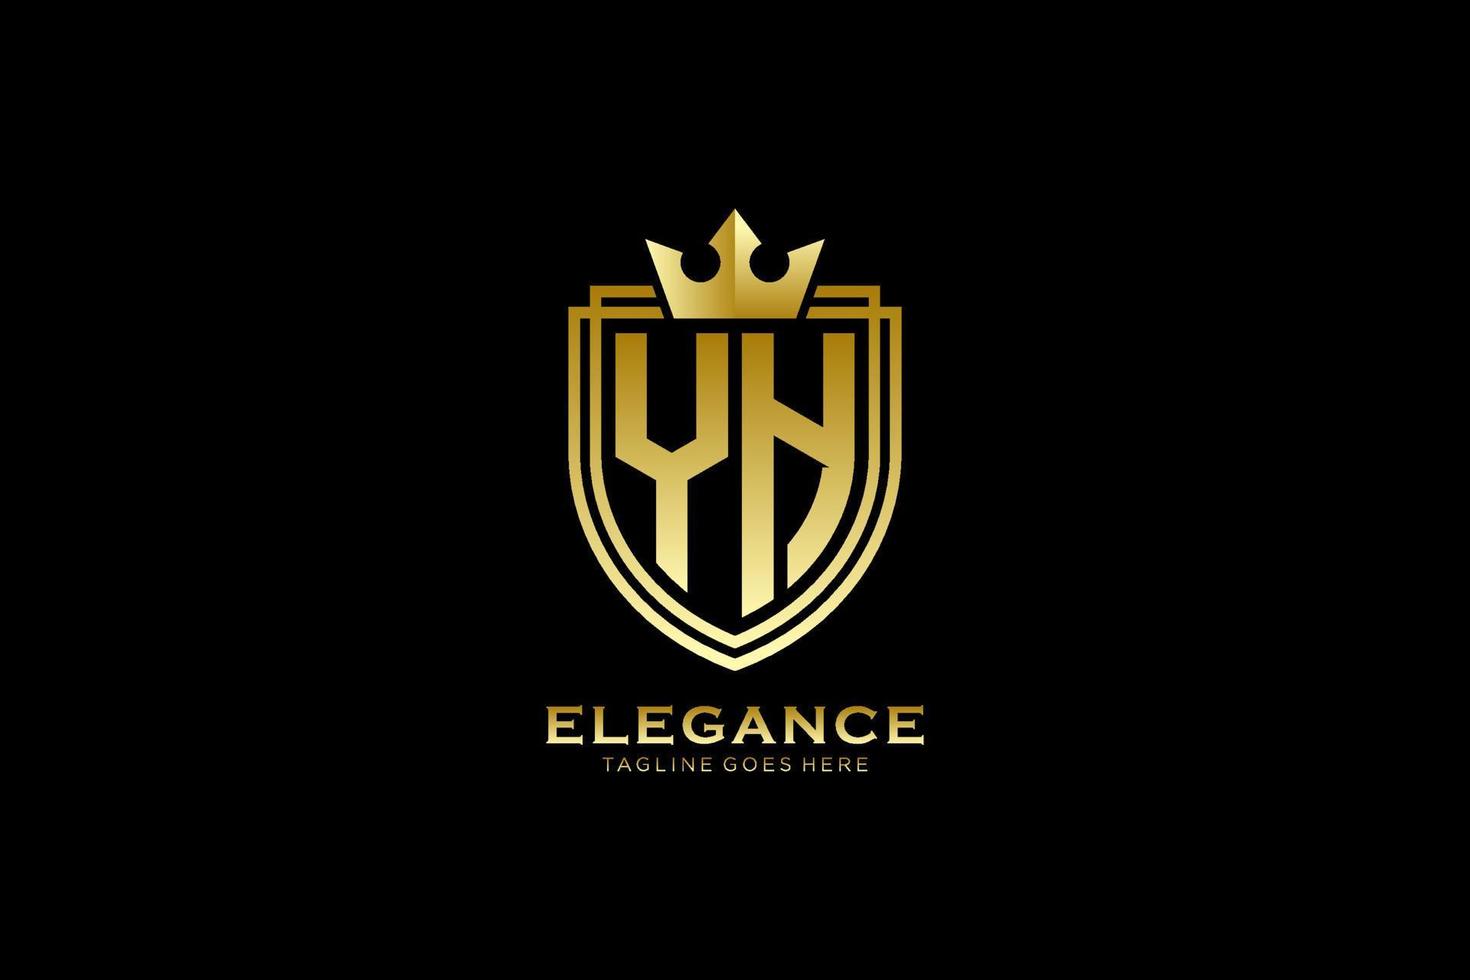 eerste ja elegant luxe monogram logo of insigne sjabloon met scrollt en Koninklijk kroon - perfect voor luxueus branding projecten vector